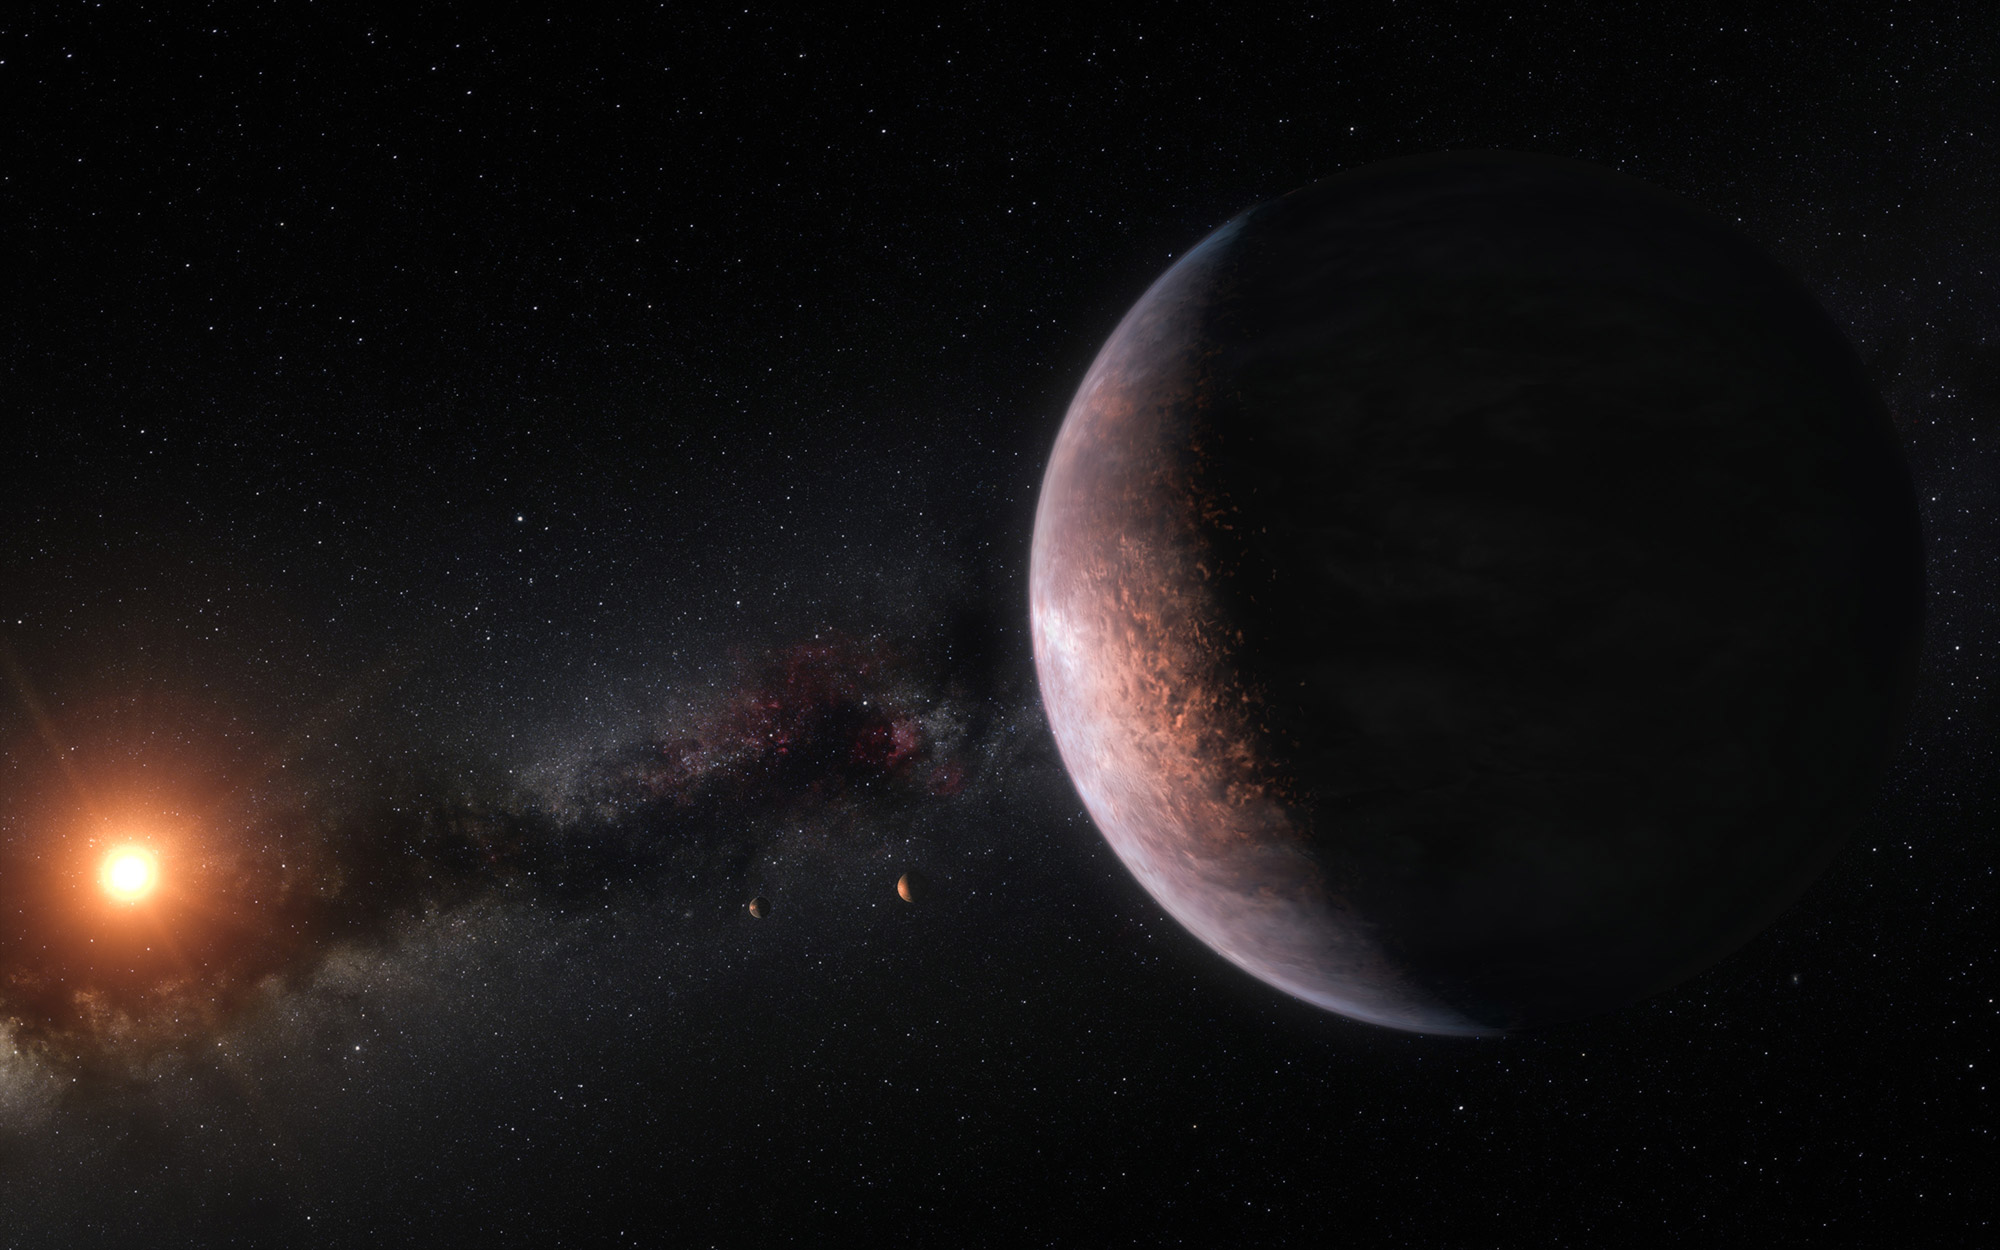 Vue d'artiste d'une exoplanète autour de Trappist-1. © ESO / M. Kornmesser